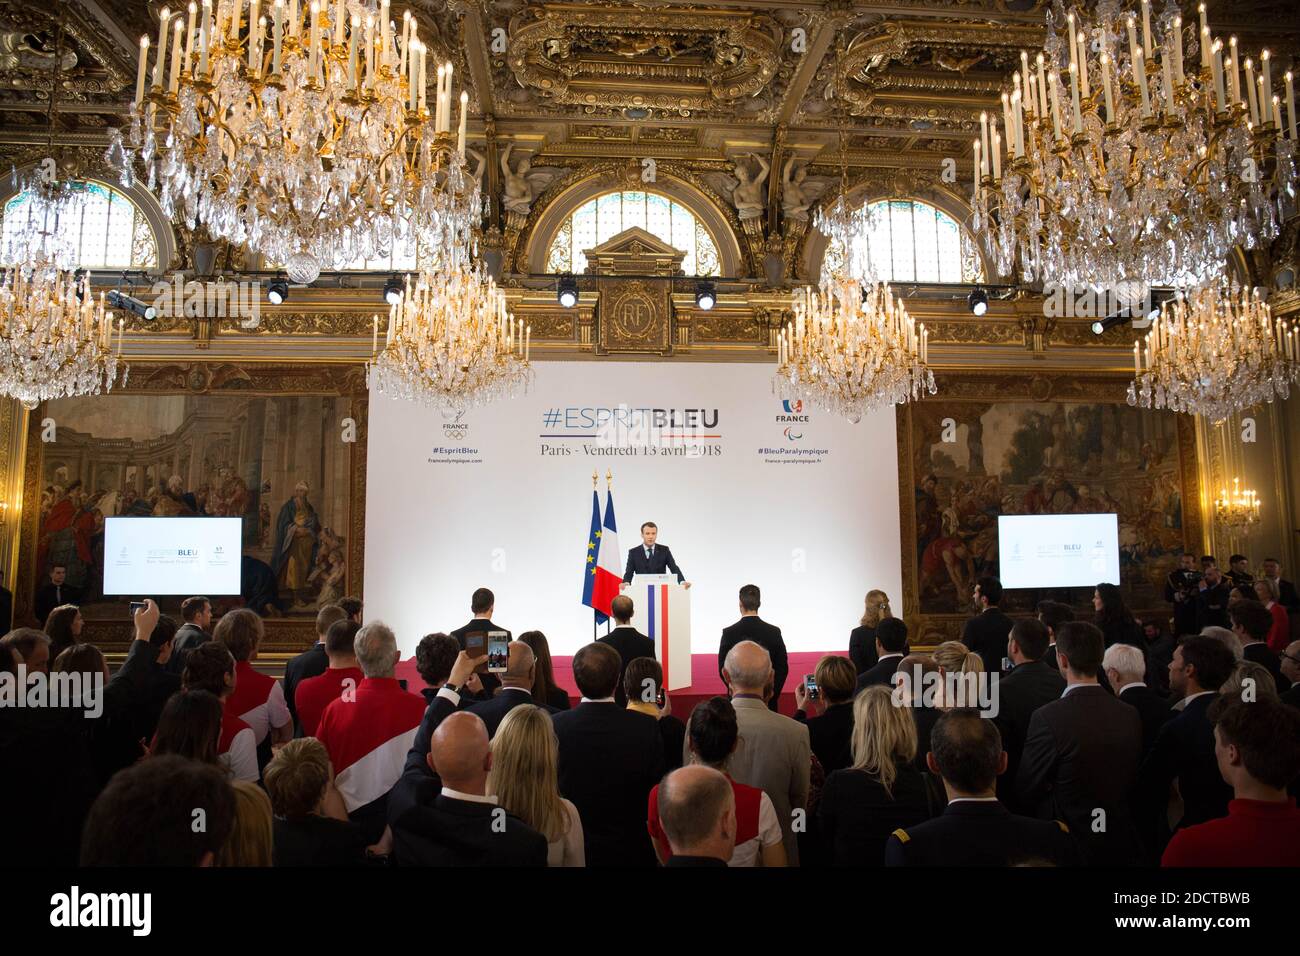 Le président français Emmanuel Macron s'exprime au palais présidentiel de l'Elysée le 13 avril 2018 à Paris lors d'une cérémonie de remise de prix réunissant des athlètes français qui ont participé aux Jeux olympiques d'hiver de Pyeongchang en 2018. Photo de Hamilton/pool/ABACAPRESS.COM Banque D'Images